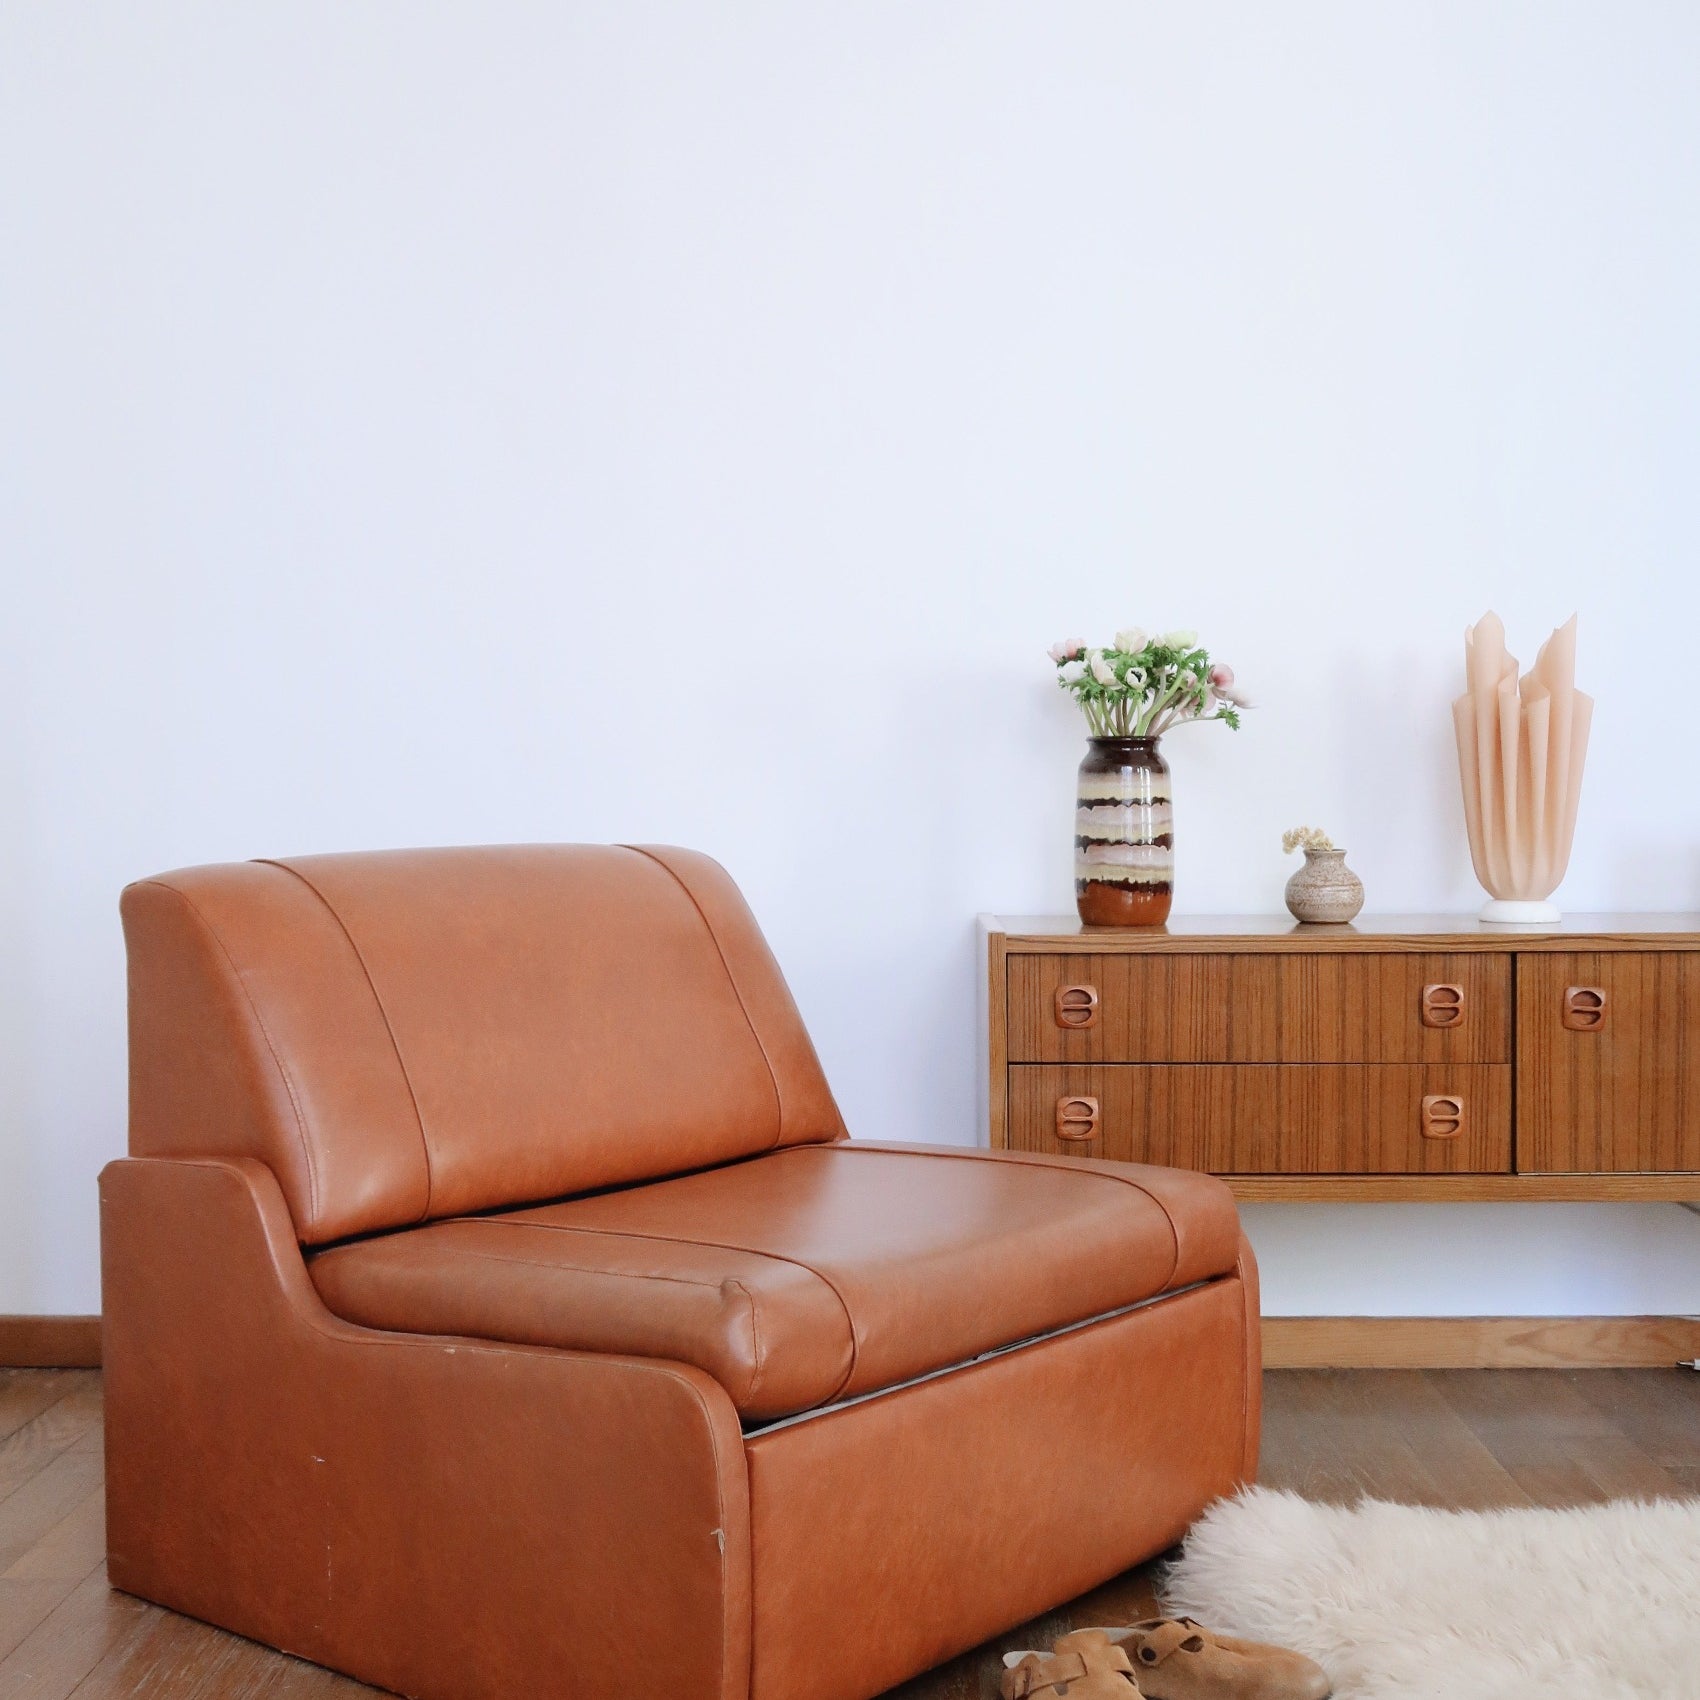 chauffeuse canapé fauteuil vintage convertible clic clac années 70 skaï cuir camel brun scandinave